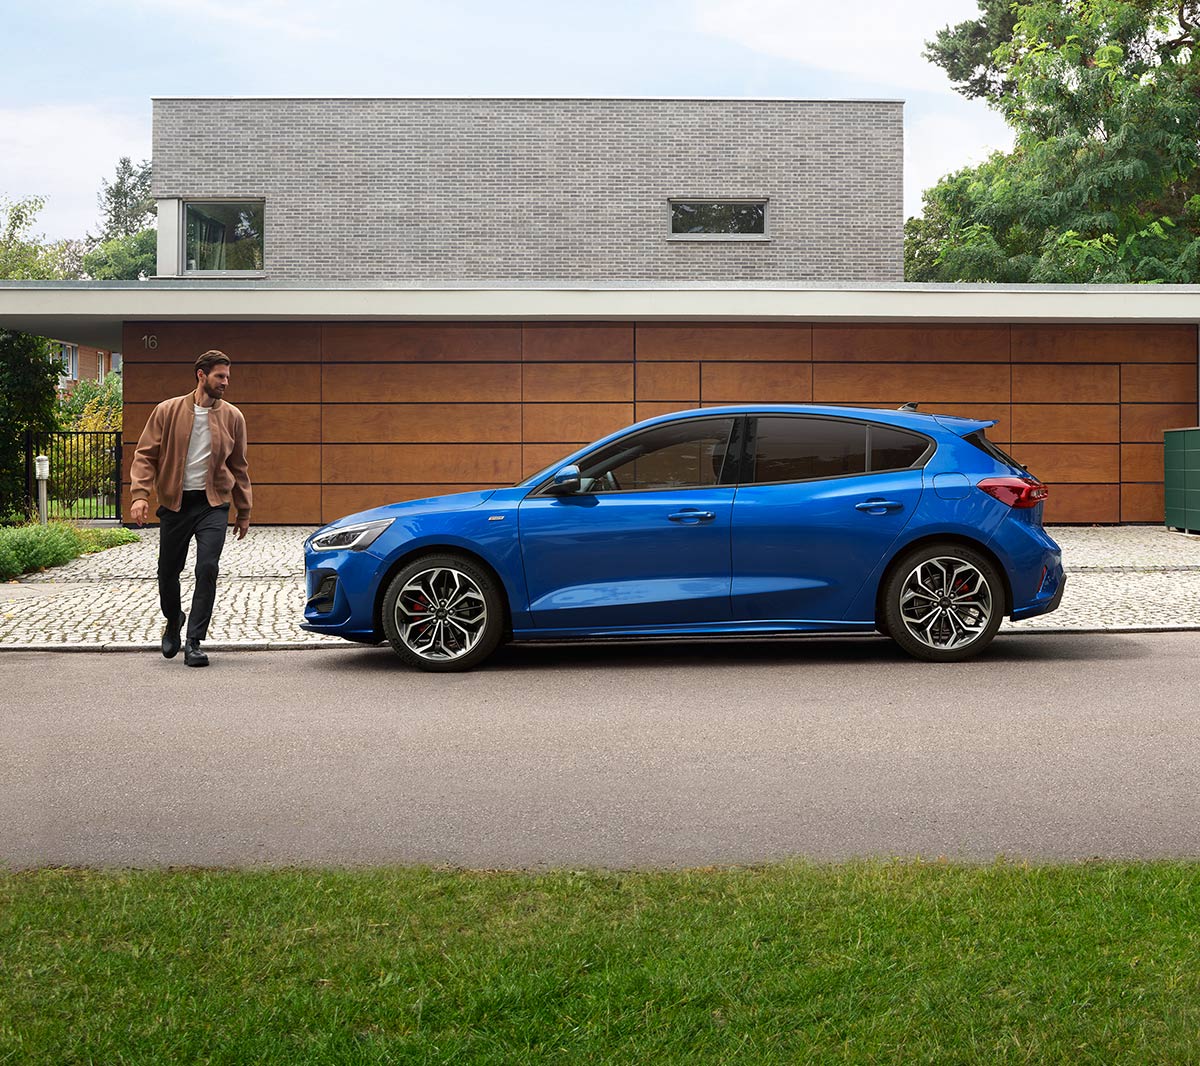 Ford Focus blu. Vista laterale, parcheggiata davanti a un’abitazione moderna. Un uomo le passa a fianco.